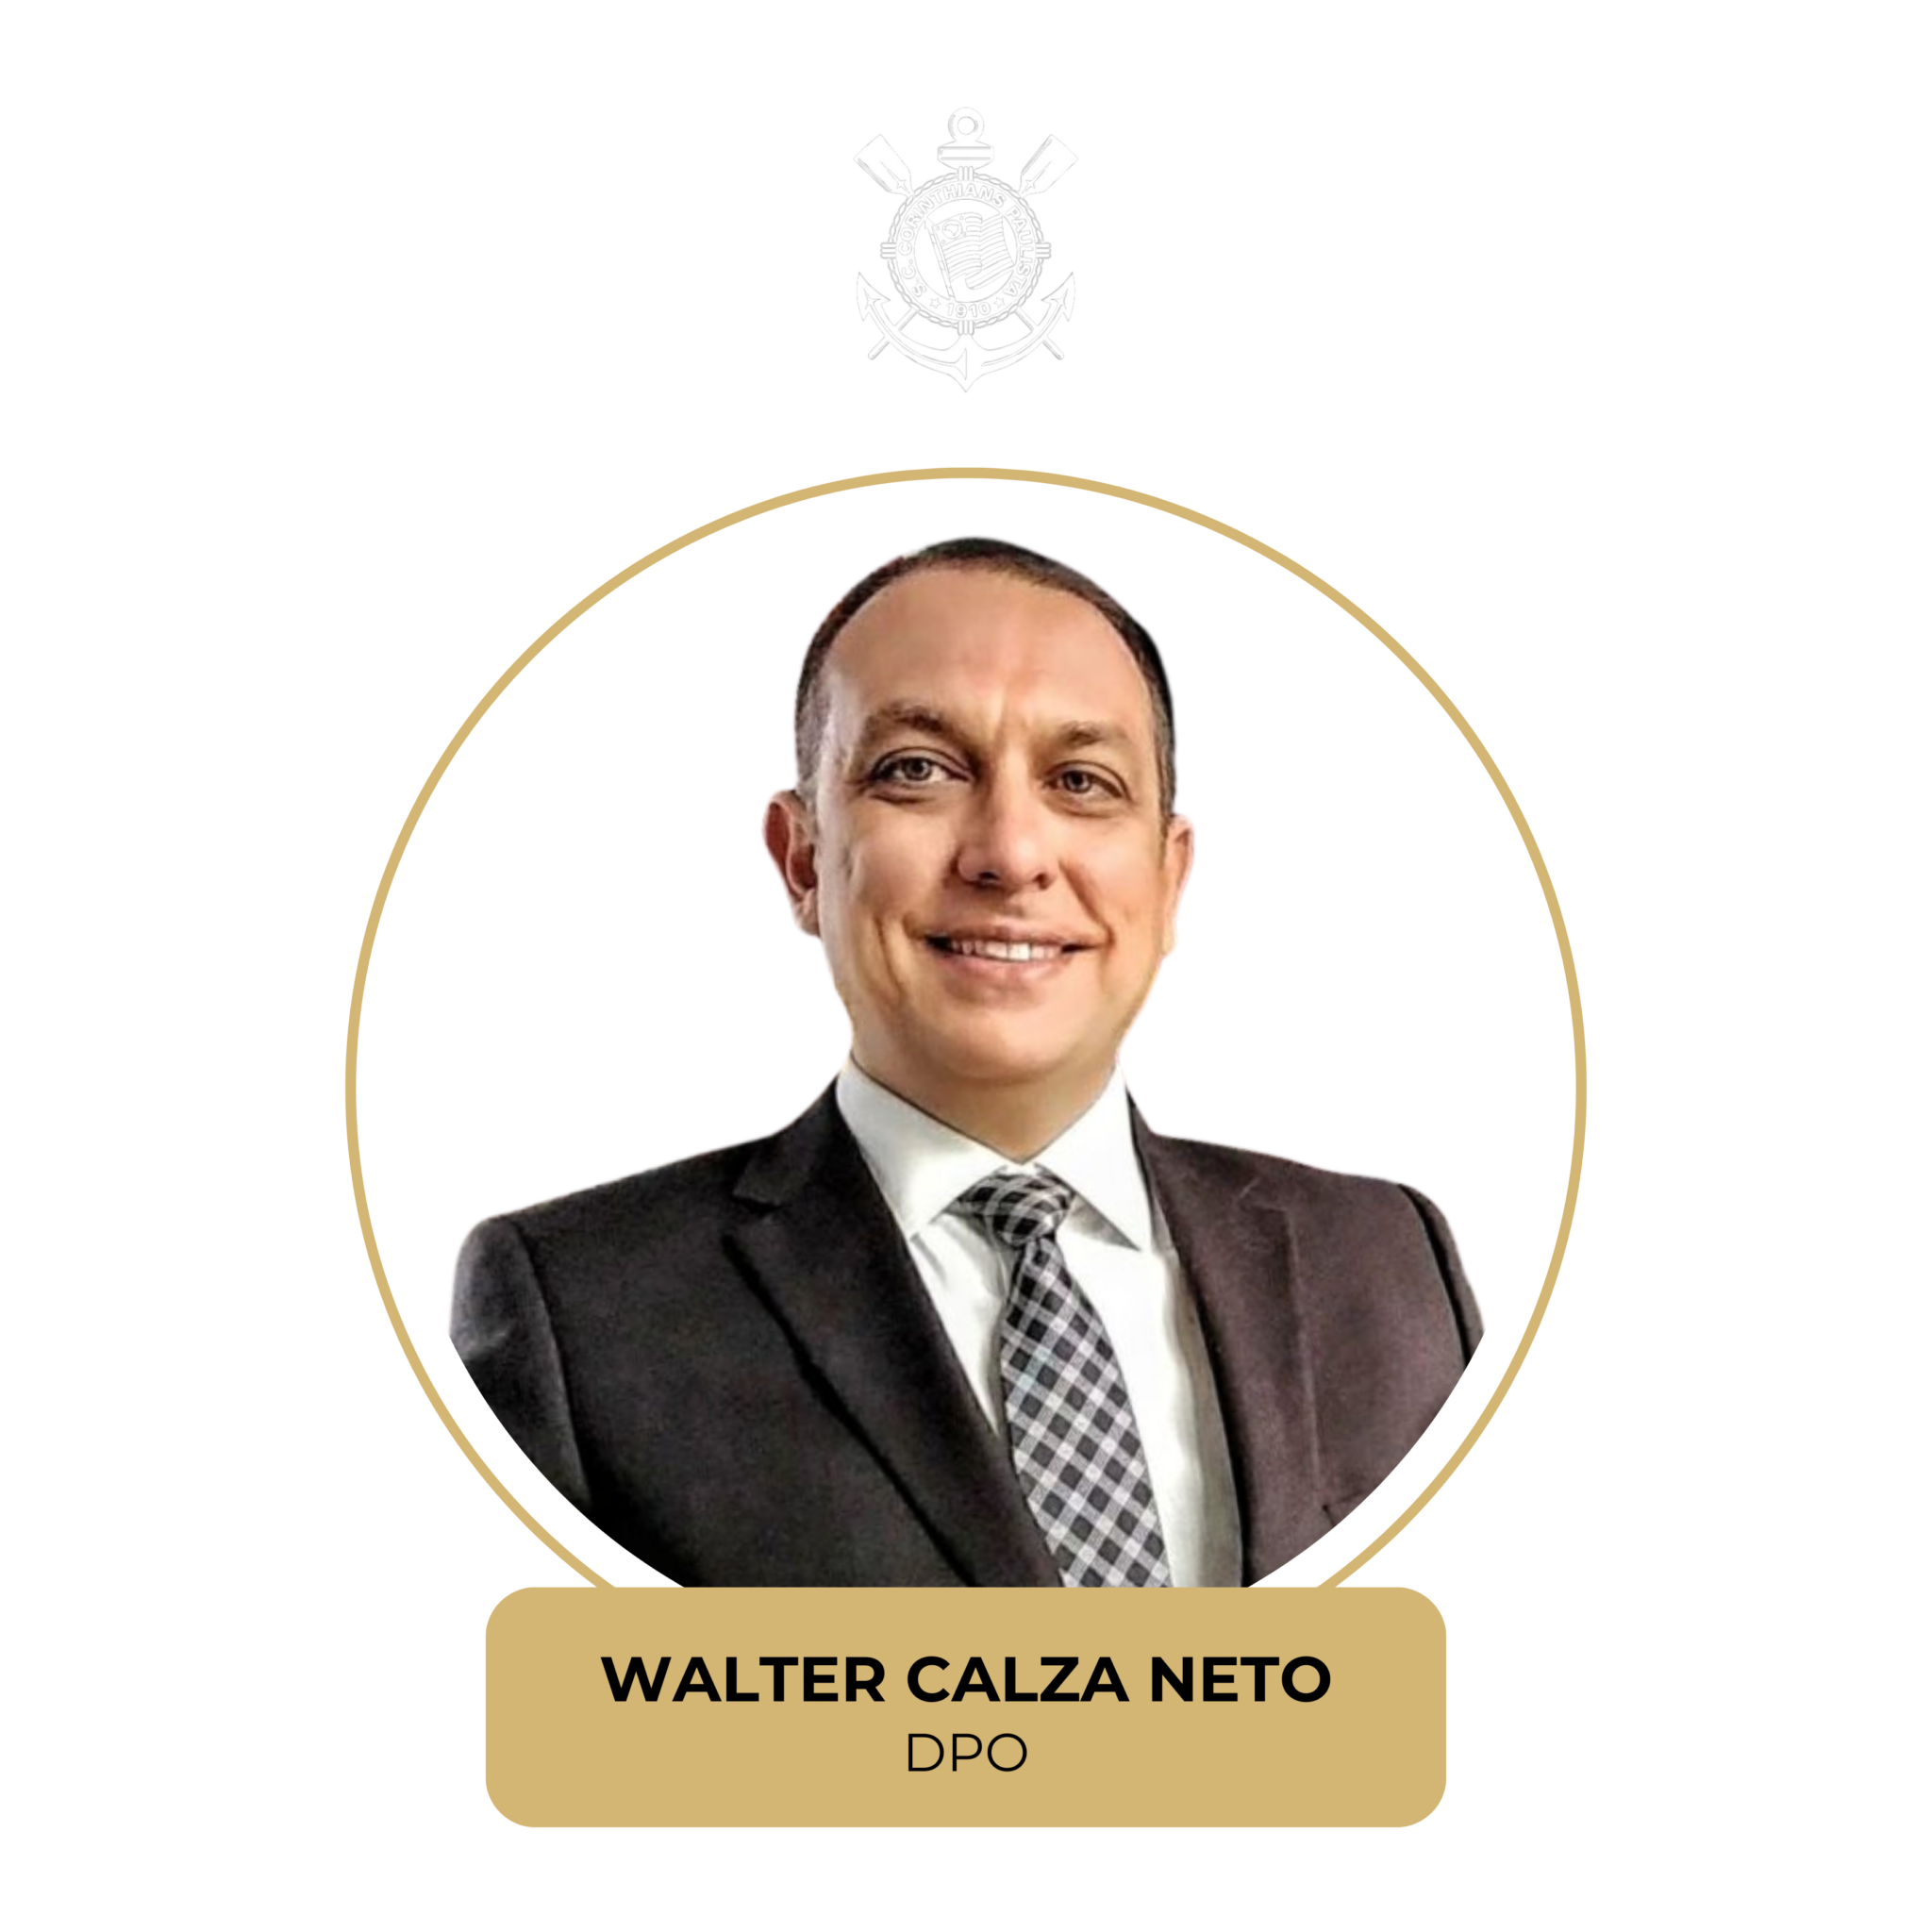 Walter Calza Neto